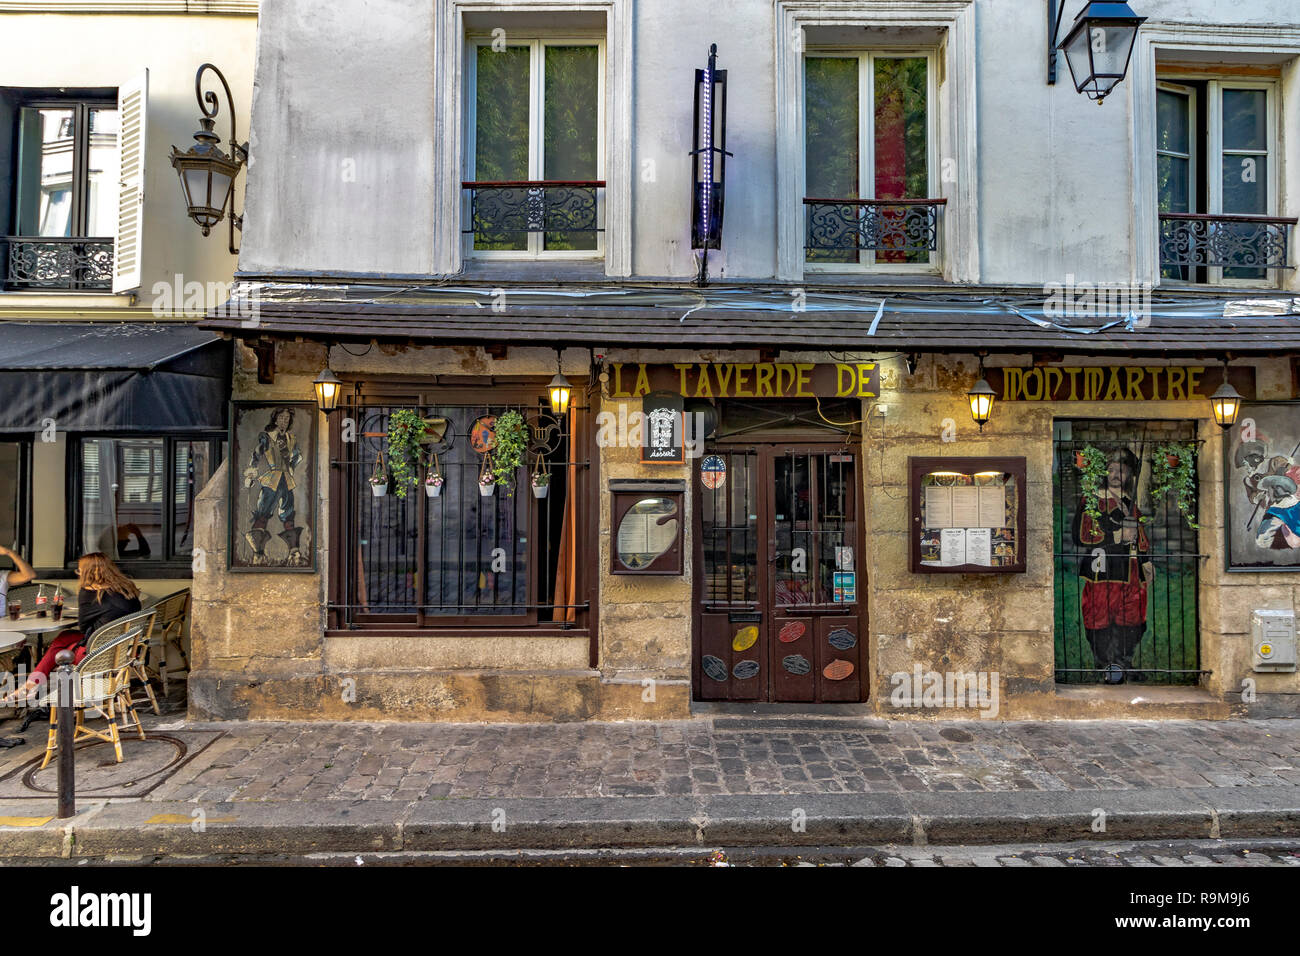 La Taverne De Montmartre restaurant on Rue Gabrielle , in Montmartre, Paris Stock Photo